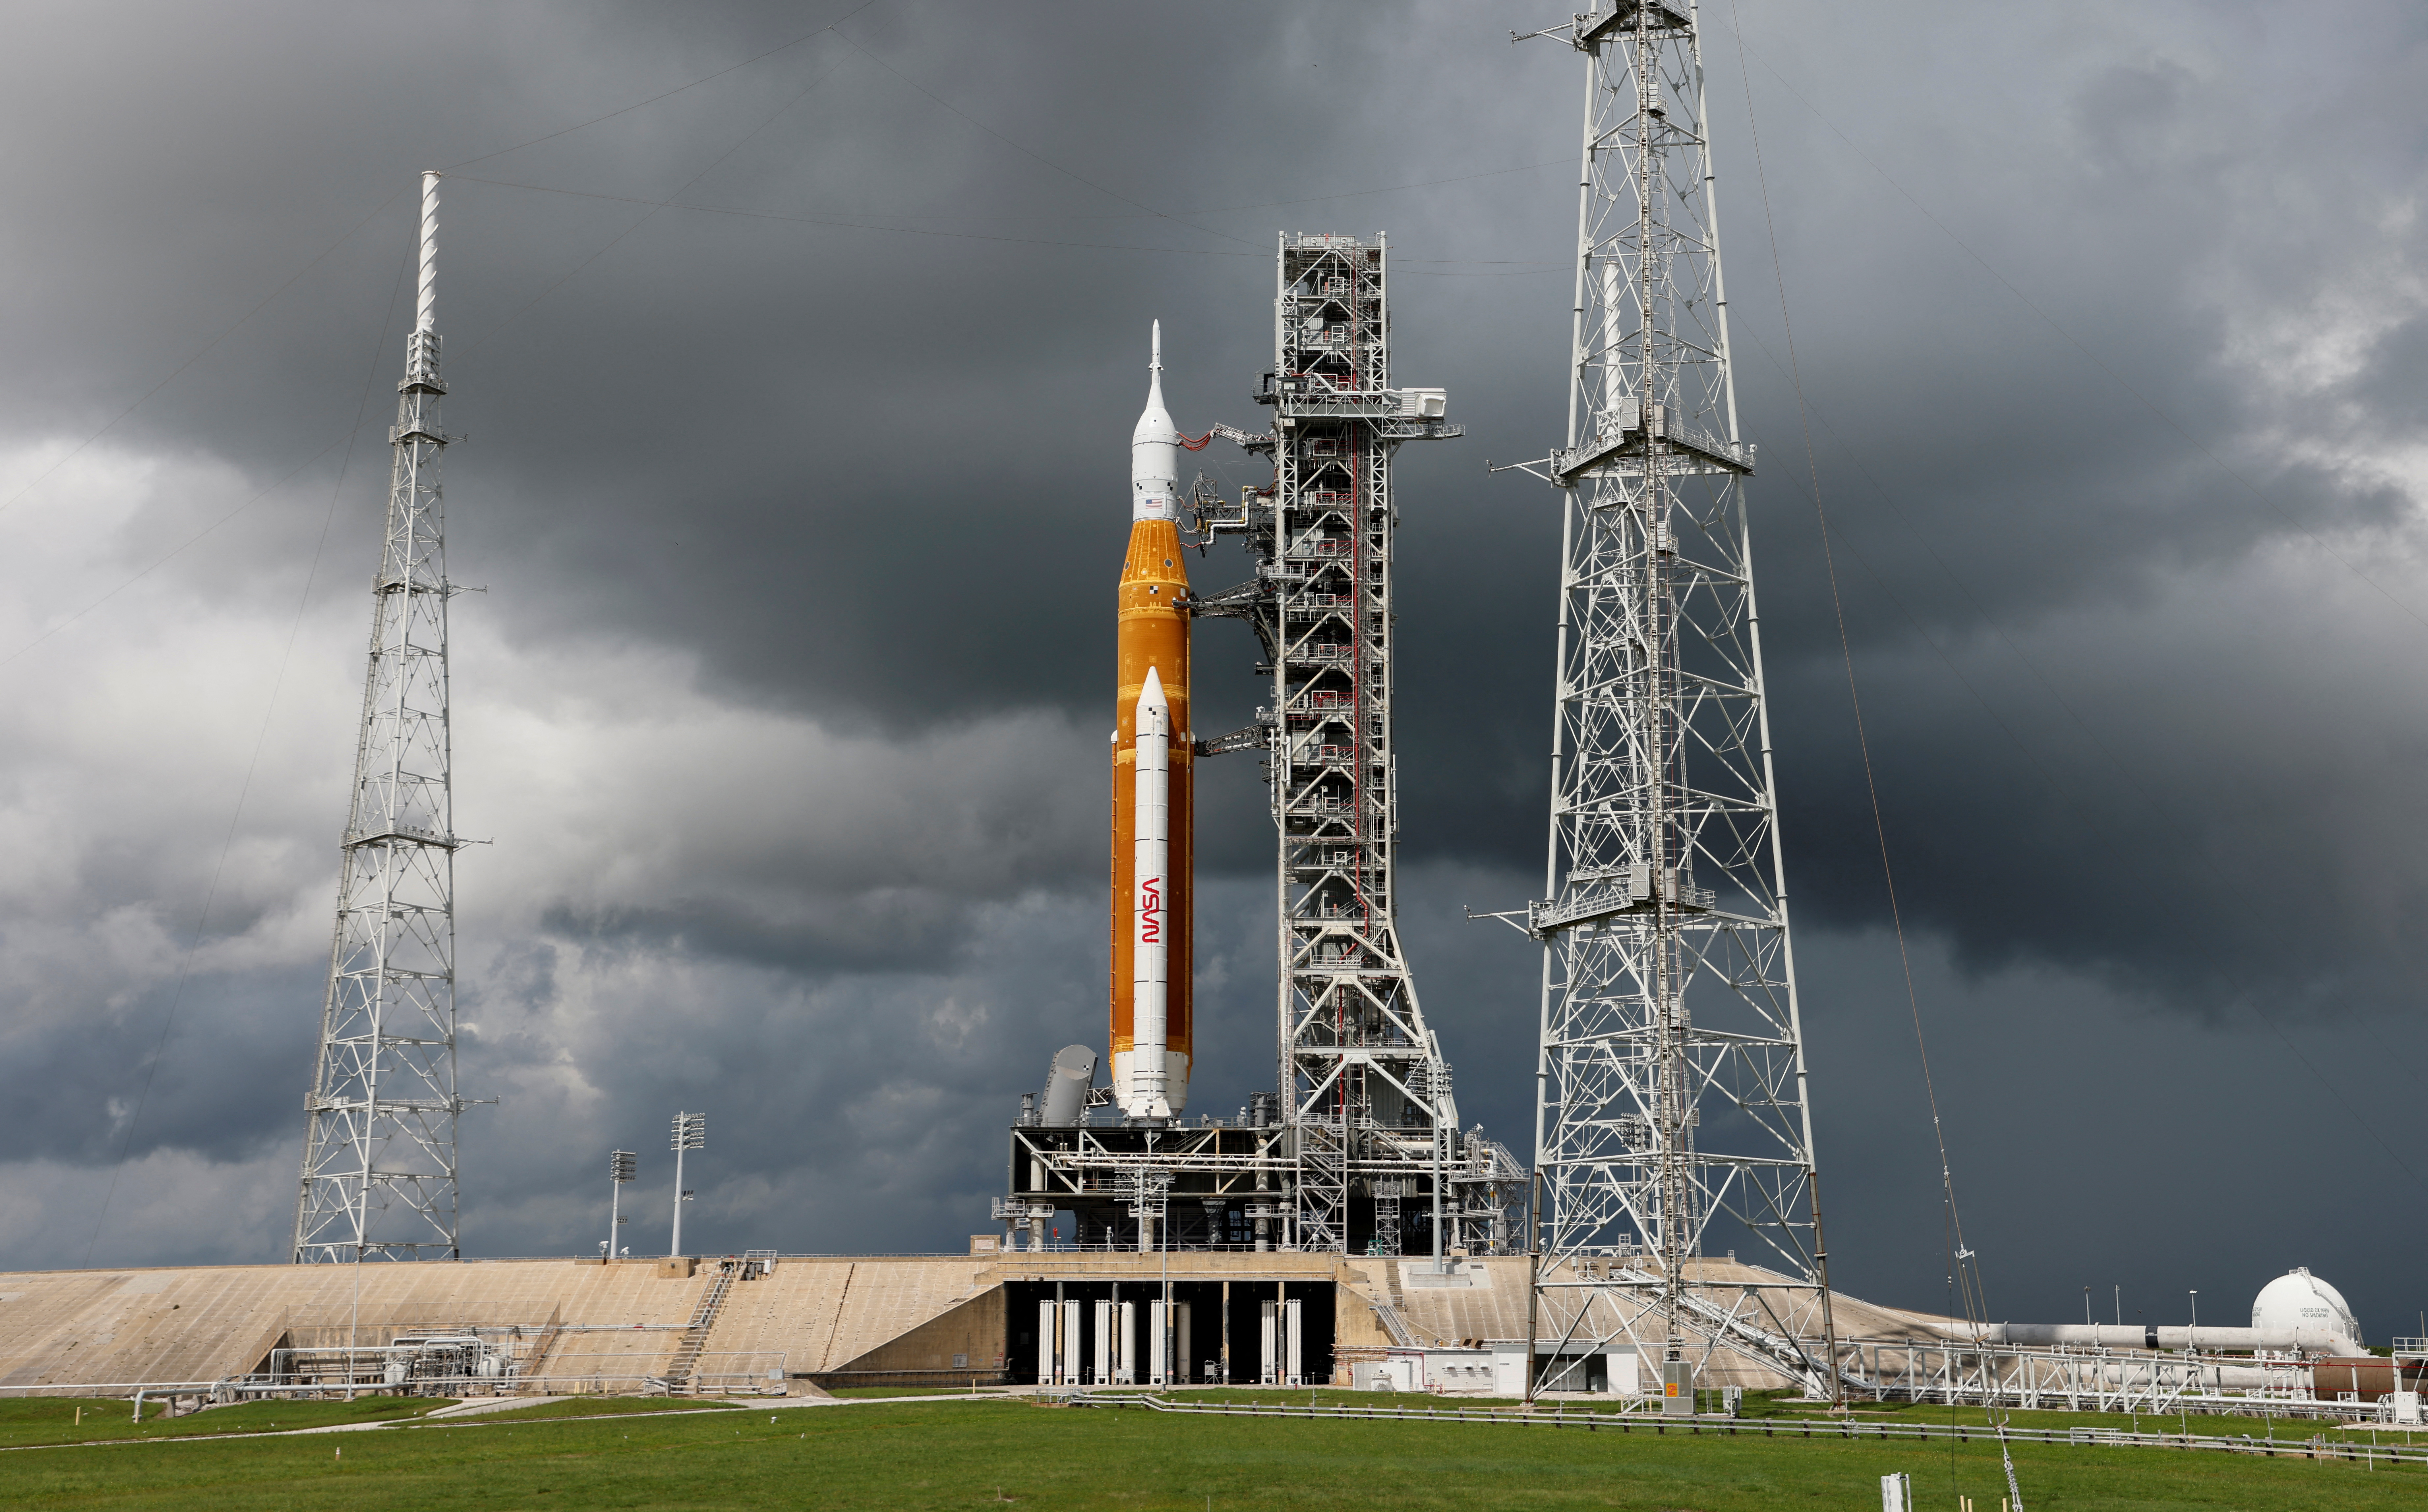 El cohete lunar de nueva generación de la NASA, el Sistema de Lanzamiento Espacial (SLS) con la cápsula de la tripulación Orion encaramada en la parte superior, se encuentra en el complejo de lanzamiento 39B antes de su lanzamiento de prueba reprogramado para la misión Artemis 1 en Cabo Cañaveral, Florida, EE.UU. 2 de septiembre de 2022.  REUTERS/Joe Skipper